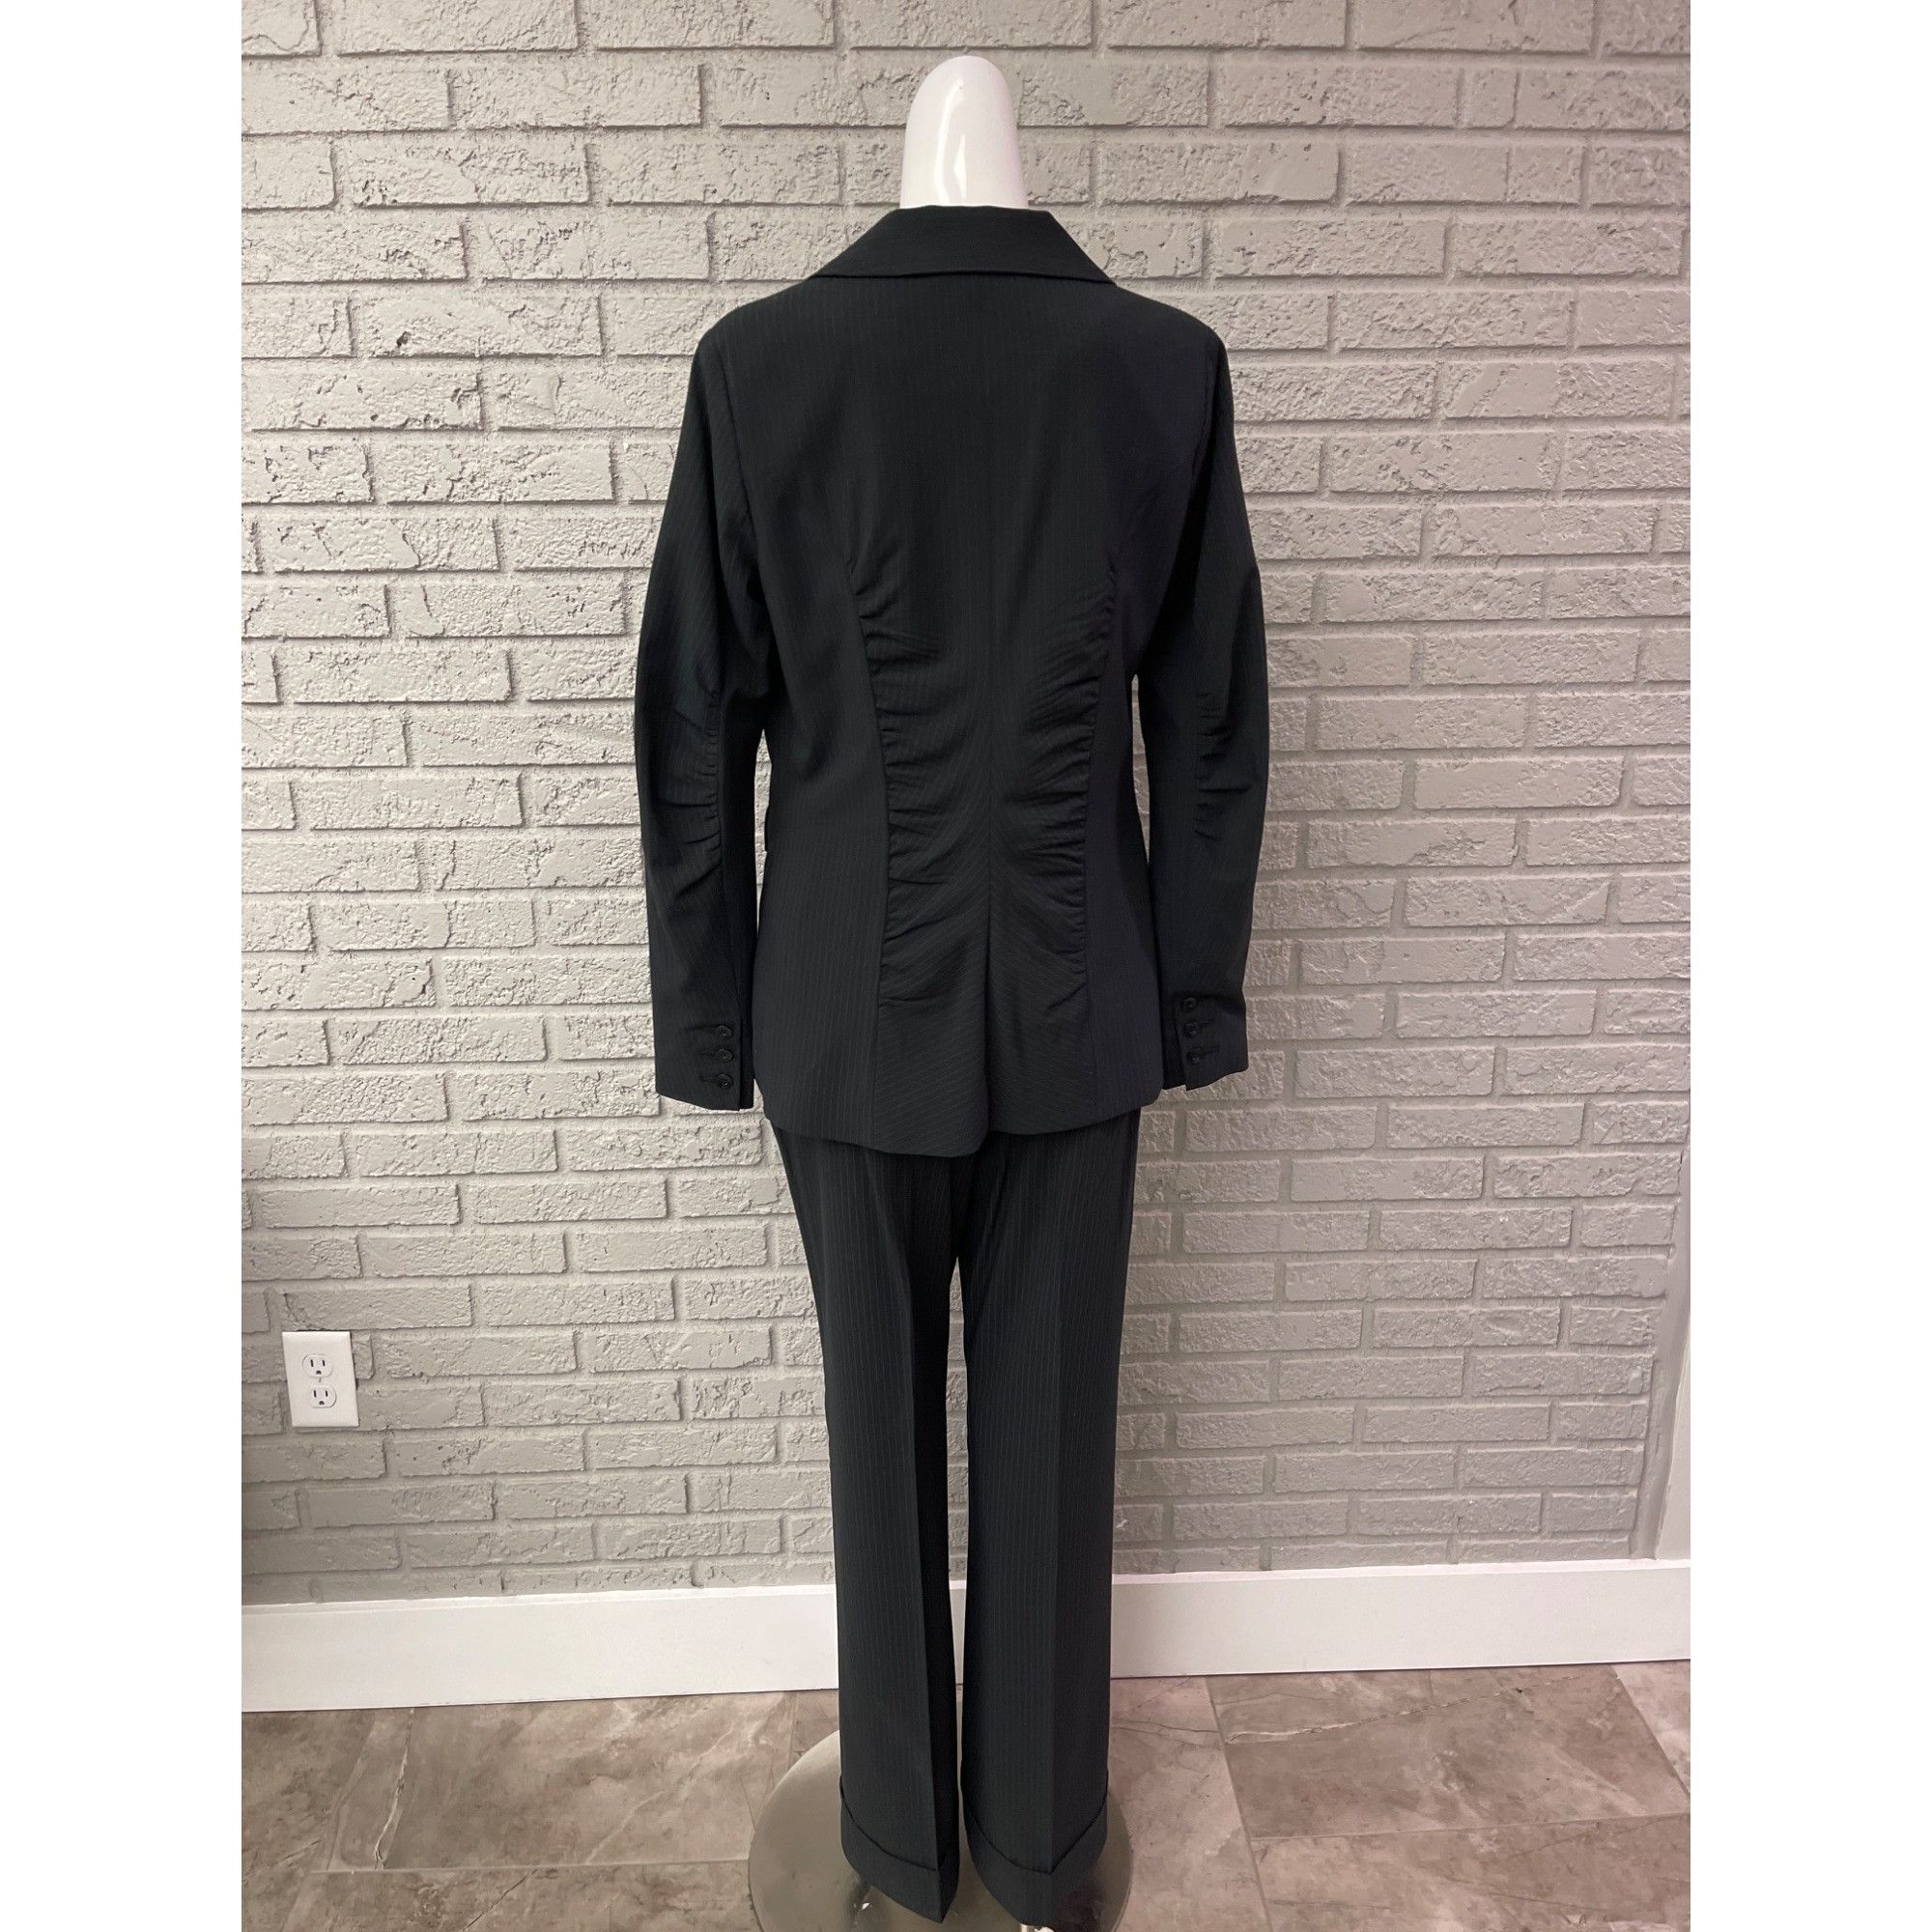 Other Cabi Black Pin Striped Pant 2 Pcs Suit Set Jacket 4 Pant 6 Size S / US 4 / IT 40 - 2 Preview